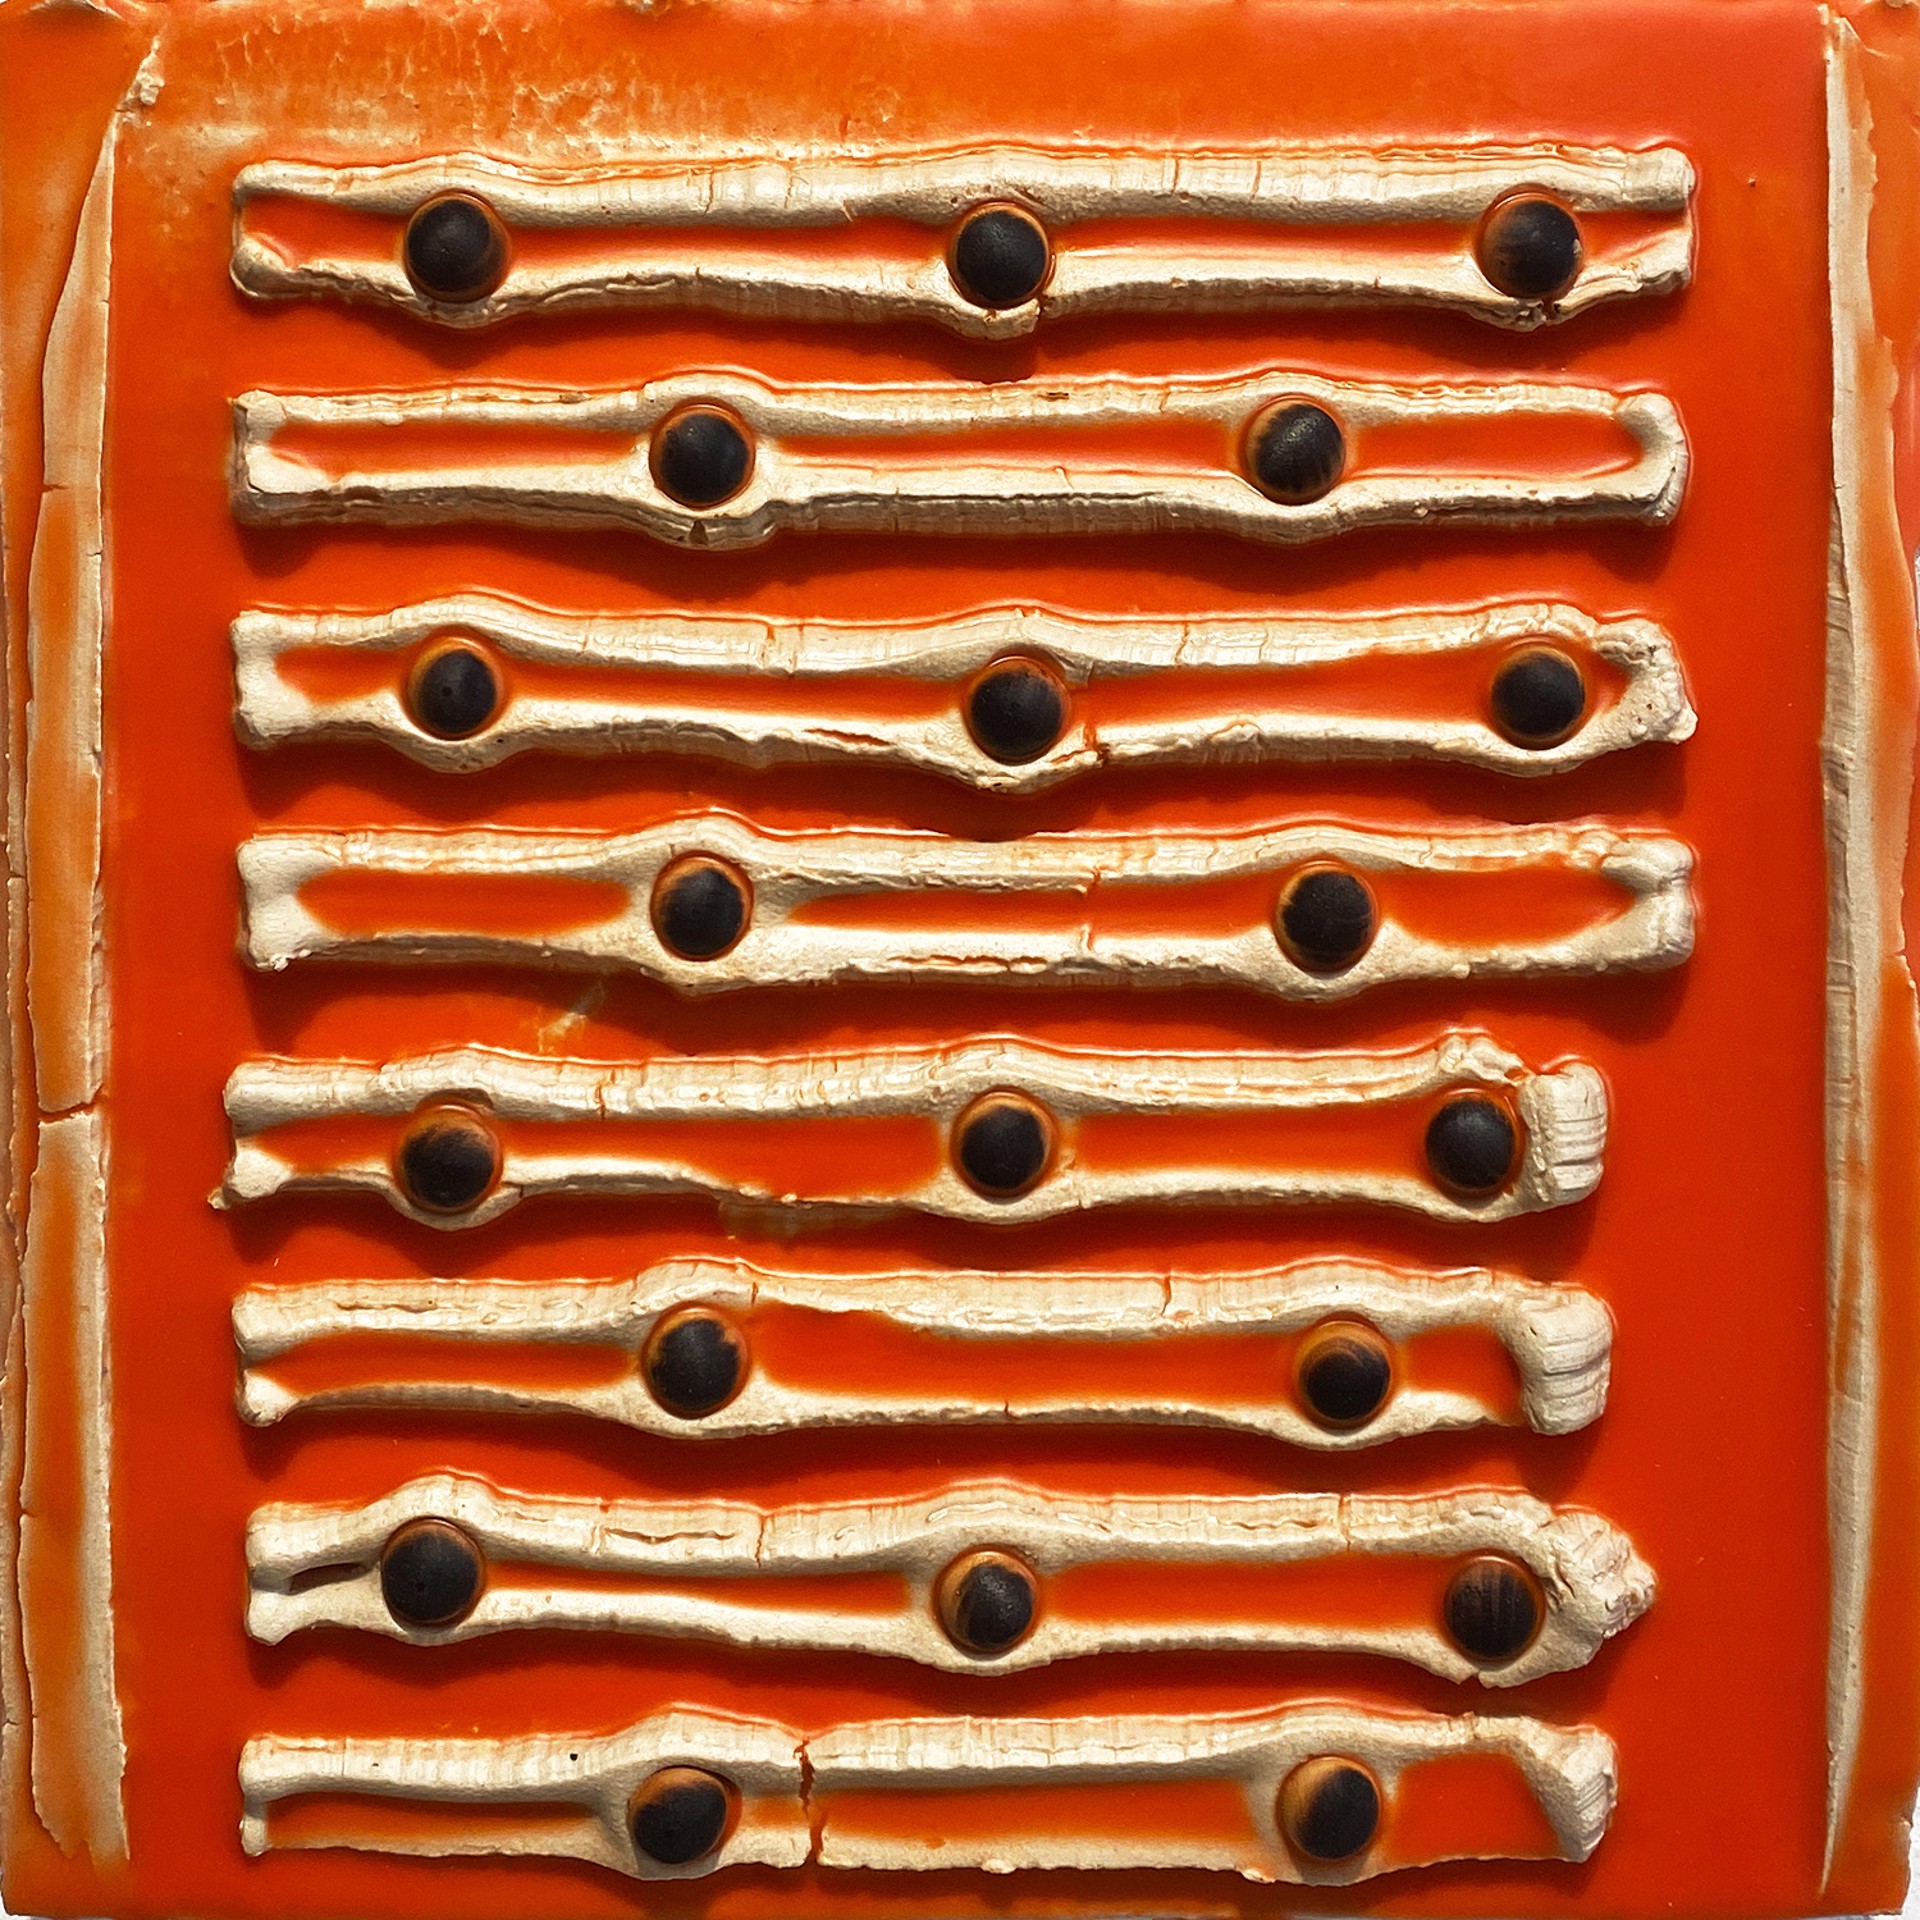 Orange Pecan Sticks by Scott Connelly